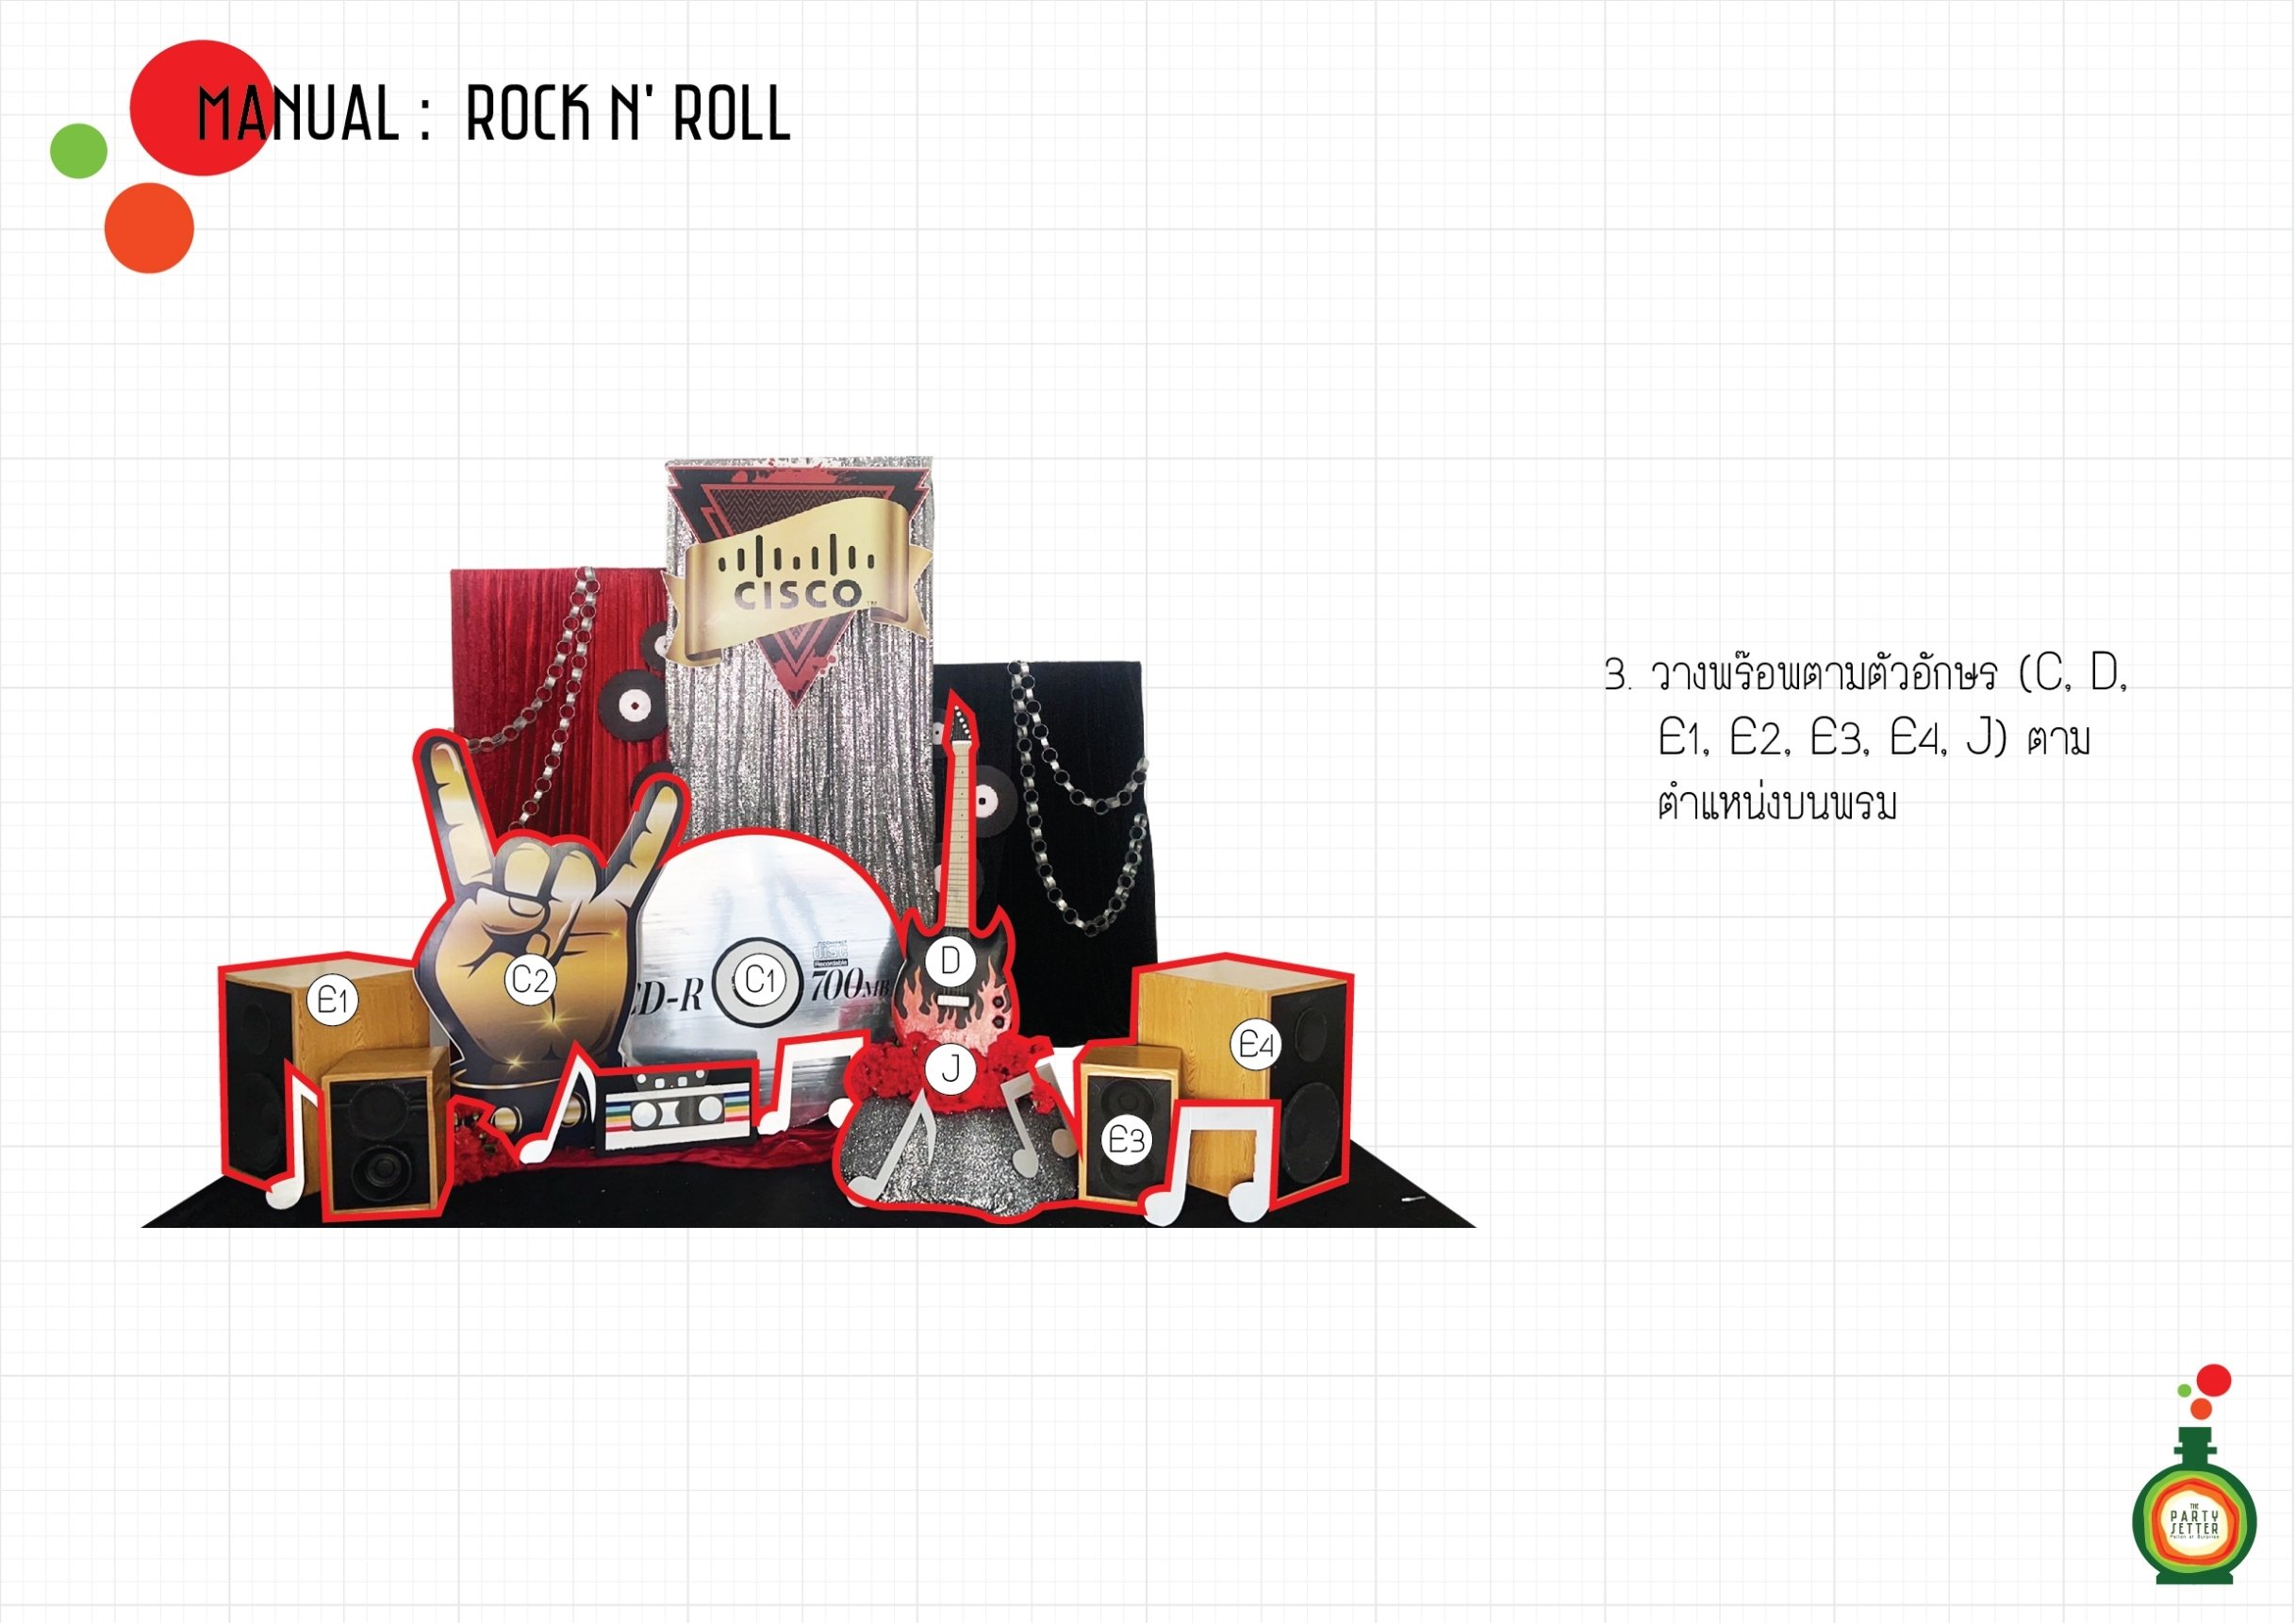 Manual_Rock n' Roll_03-01.jpg